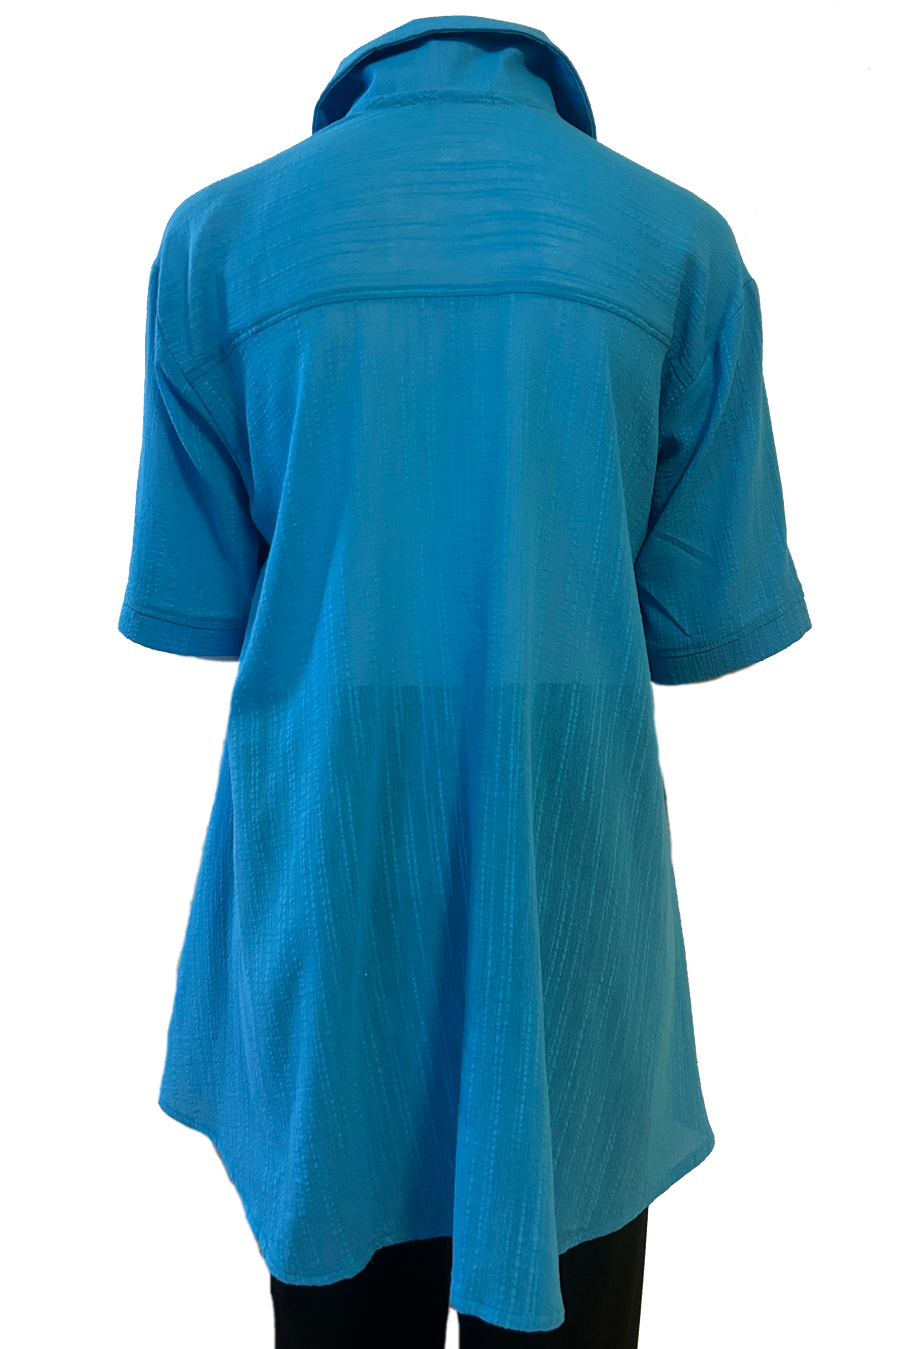 Capri shirt: Turquoise Cotton